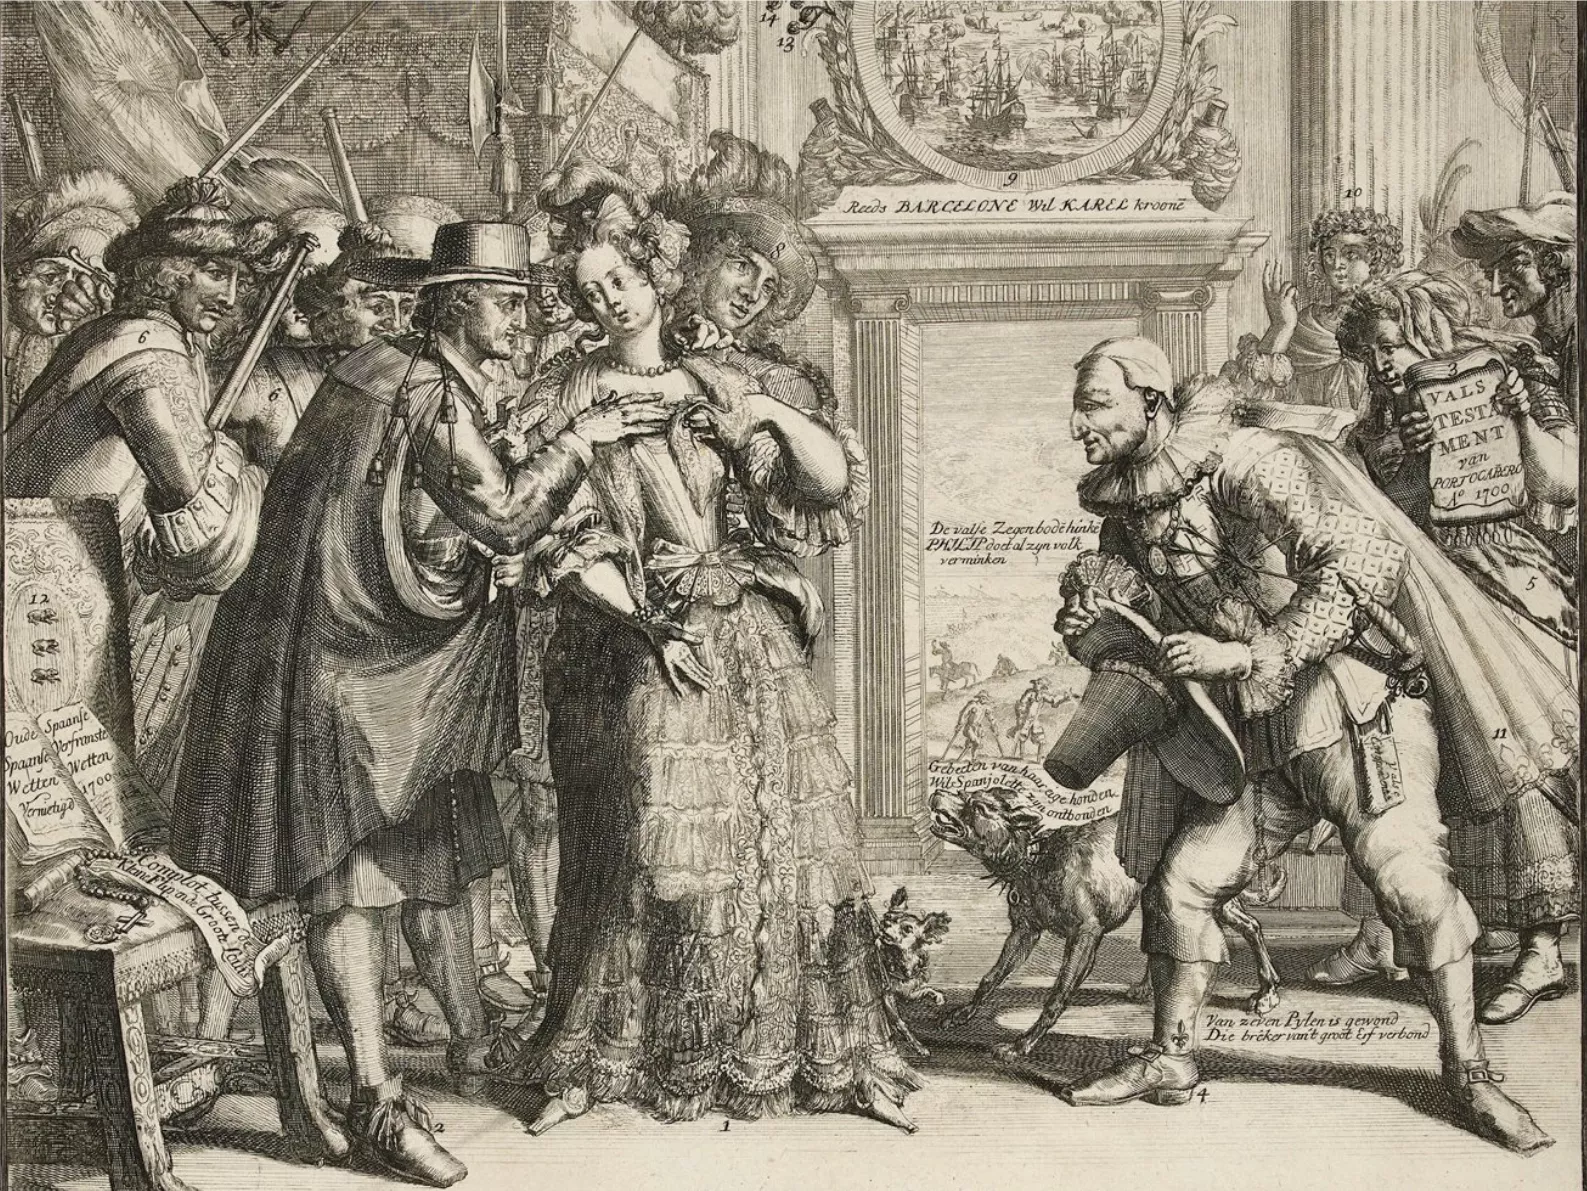 L’evolució del conflicte va esdevenir també material per als gravats satírics, com aquest holandès que il·lustra 'les difícils noces entre el Quixot francès i la verge espanyola'